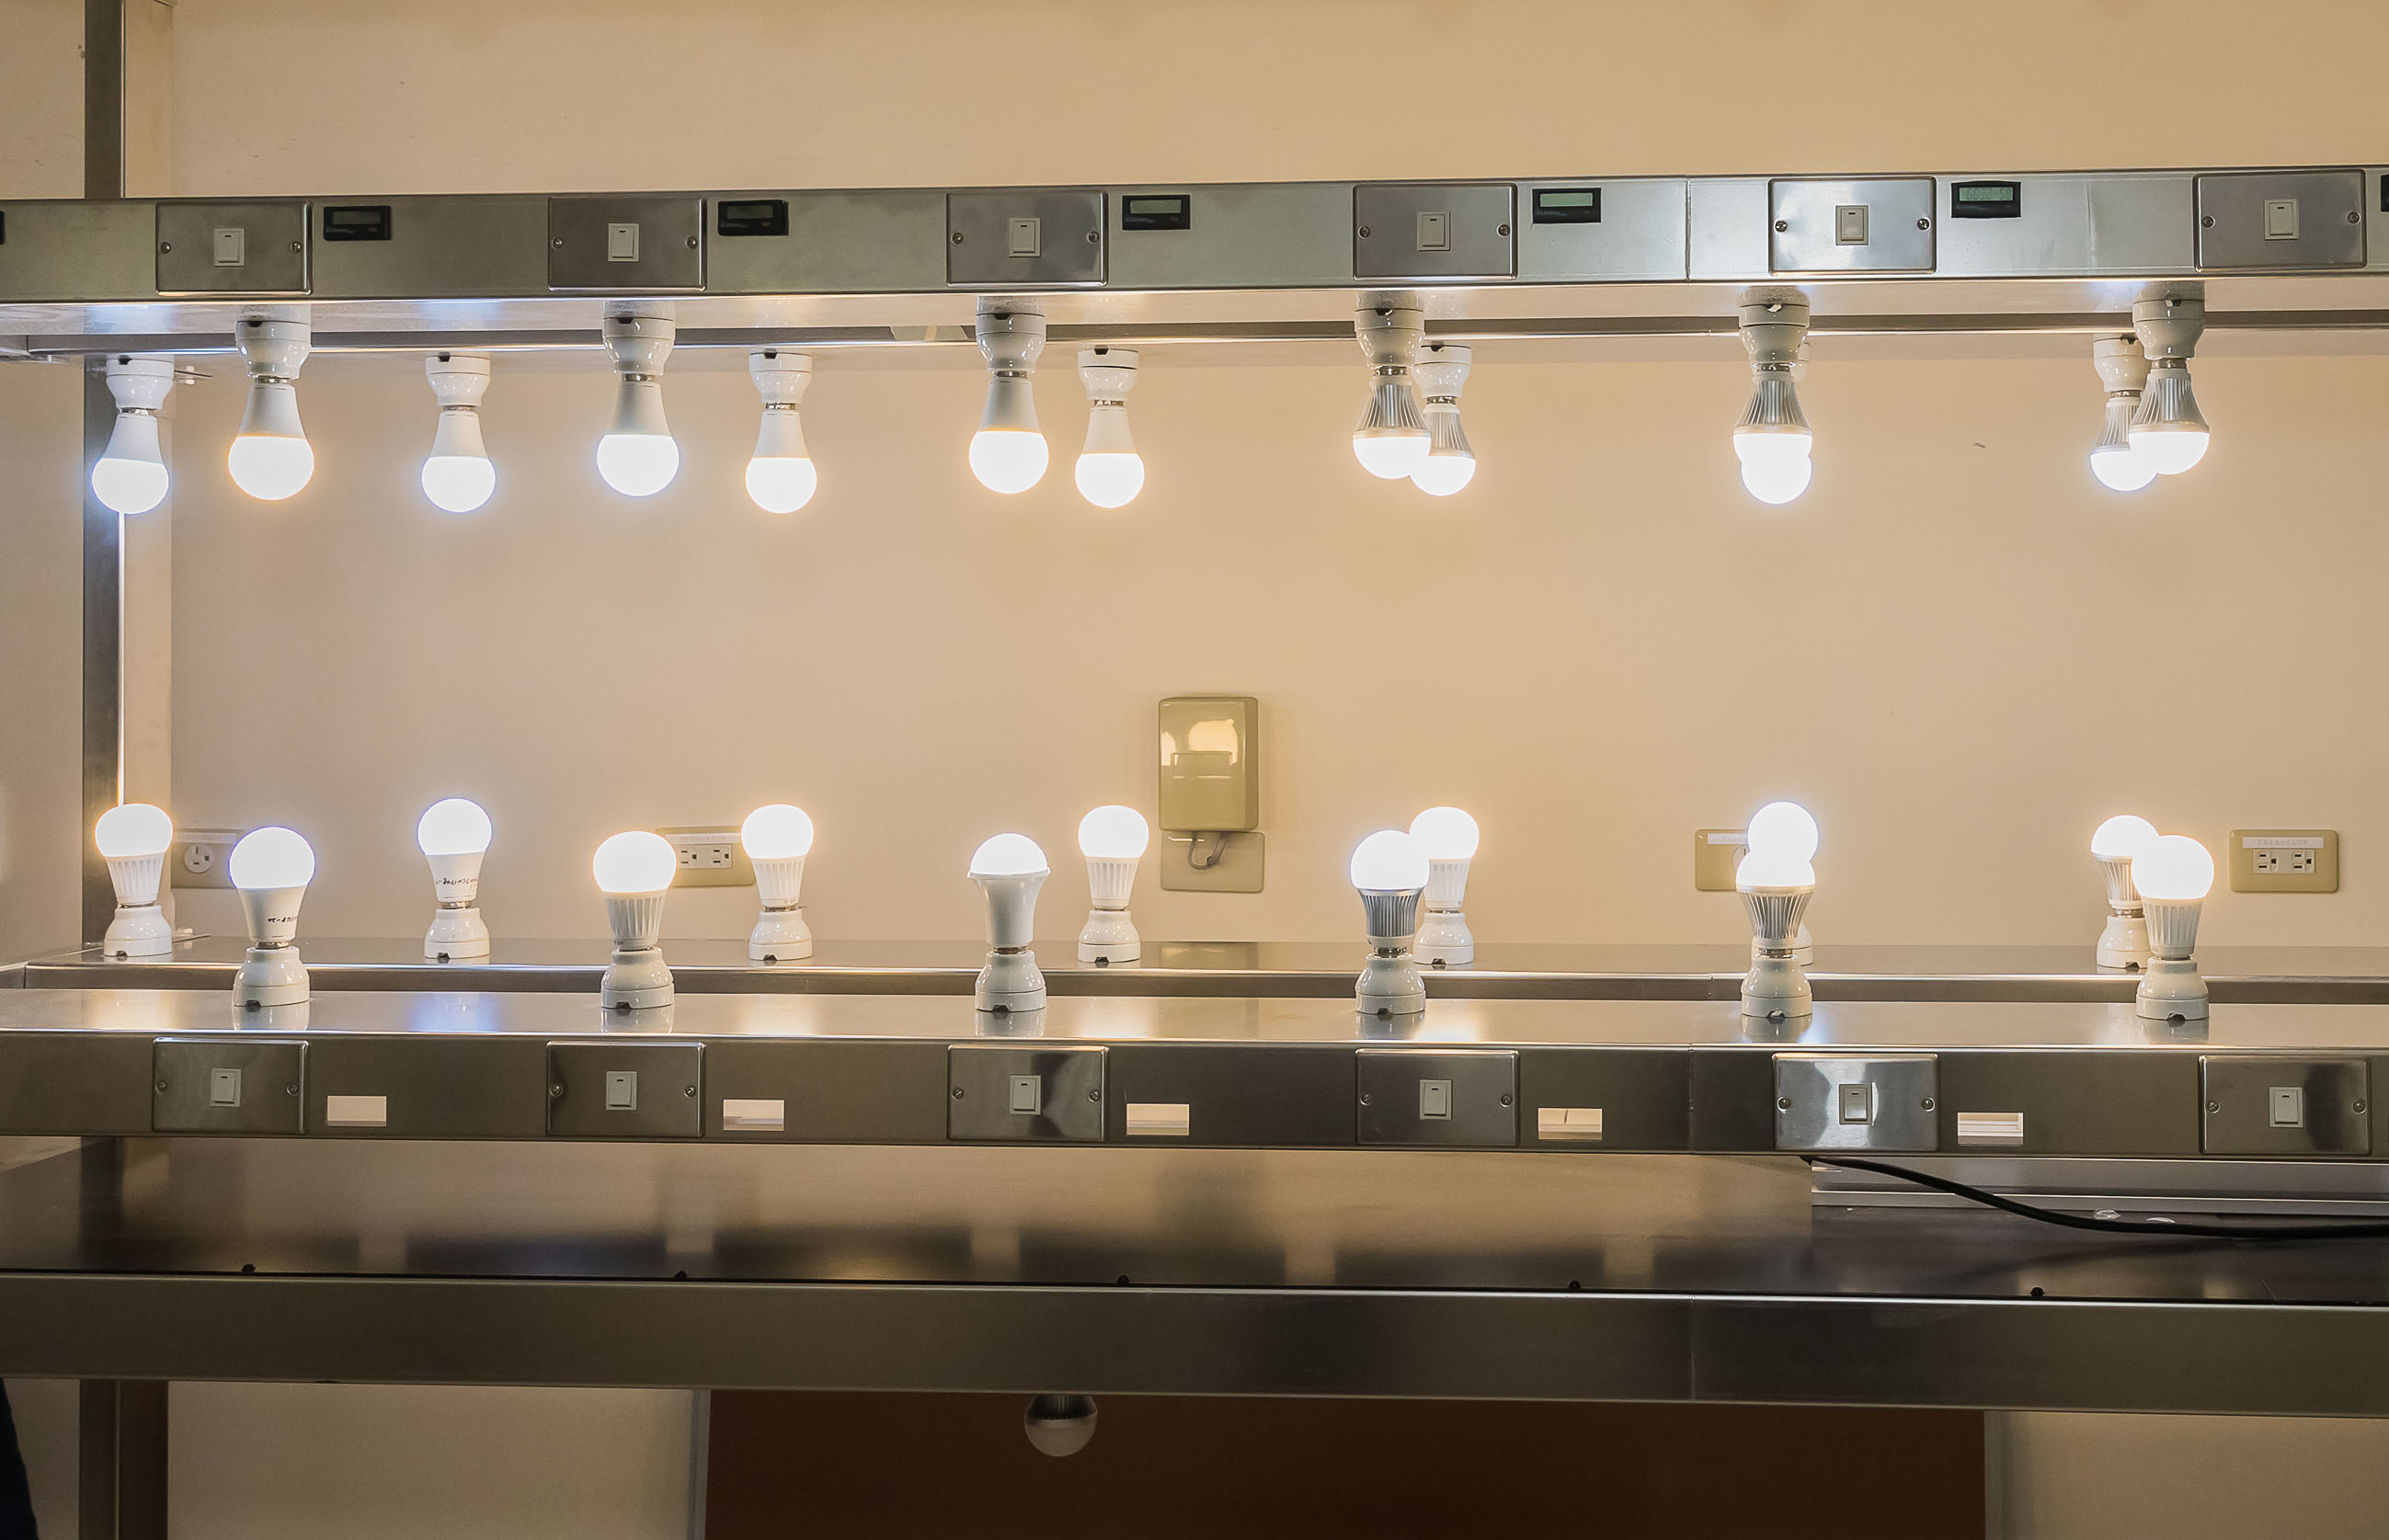 枯化光衰量測系統： 隨著燈具使用時間拉長，發出來的光也會逐漸減弱變暗，產生光衰狀況。一般LED球泡燈，需經過至少2,000小時、甚至多達6,000小時以上的測試，以測定其光衰程度是否合於規範。